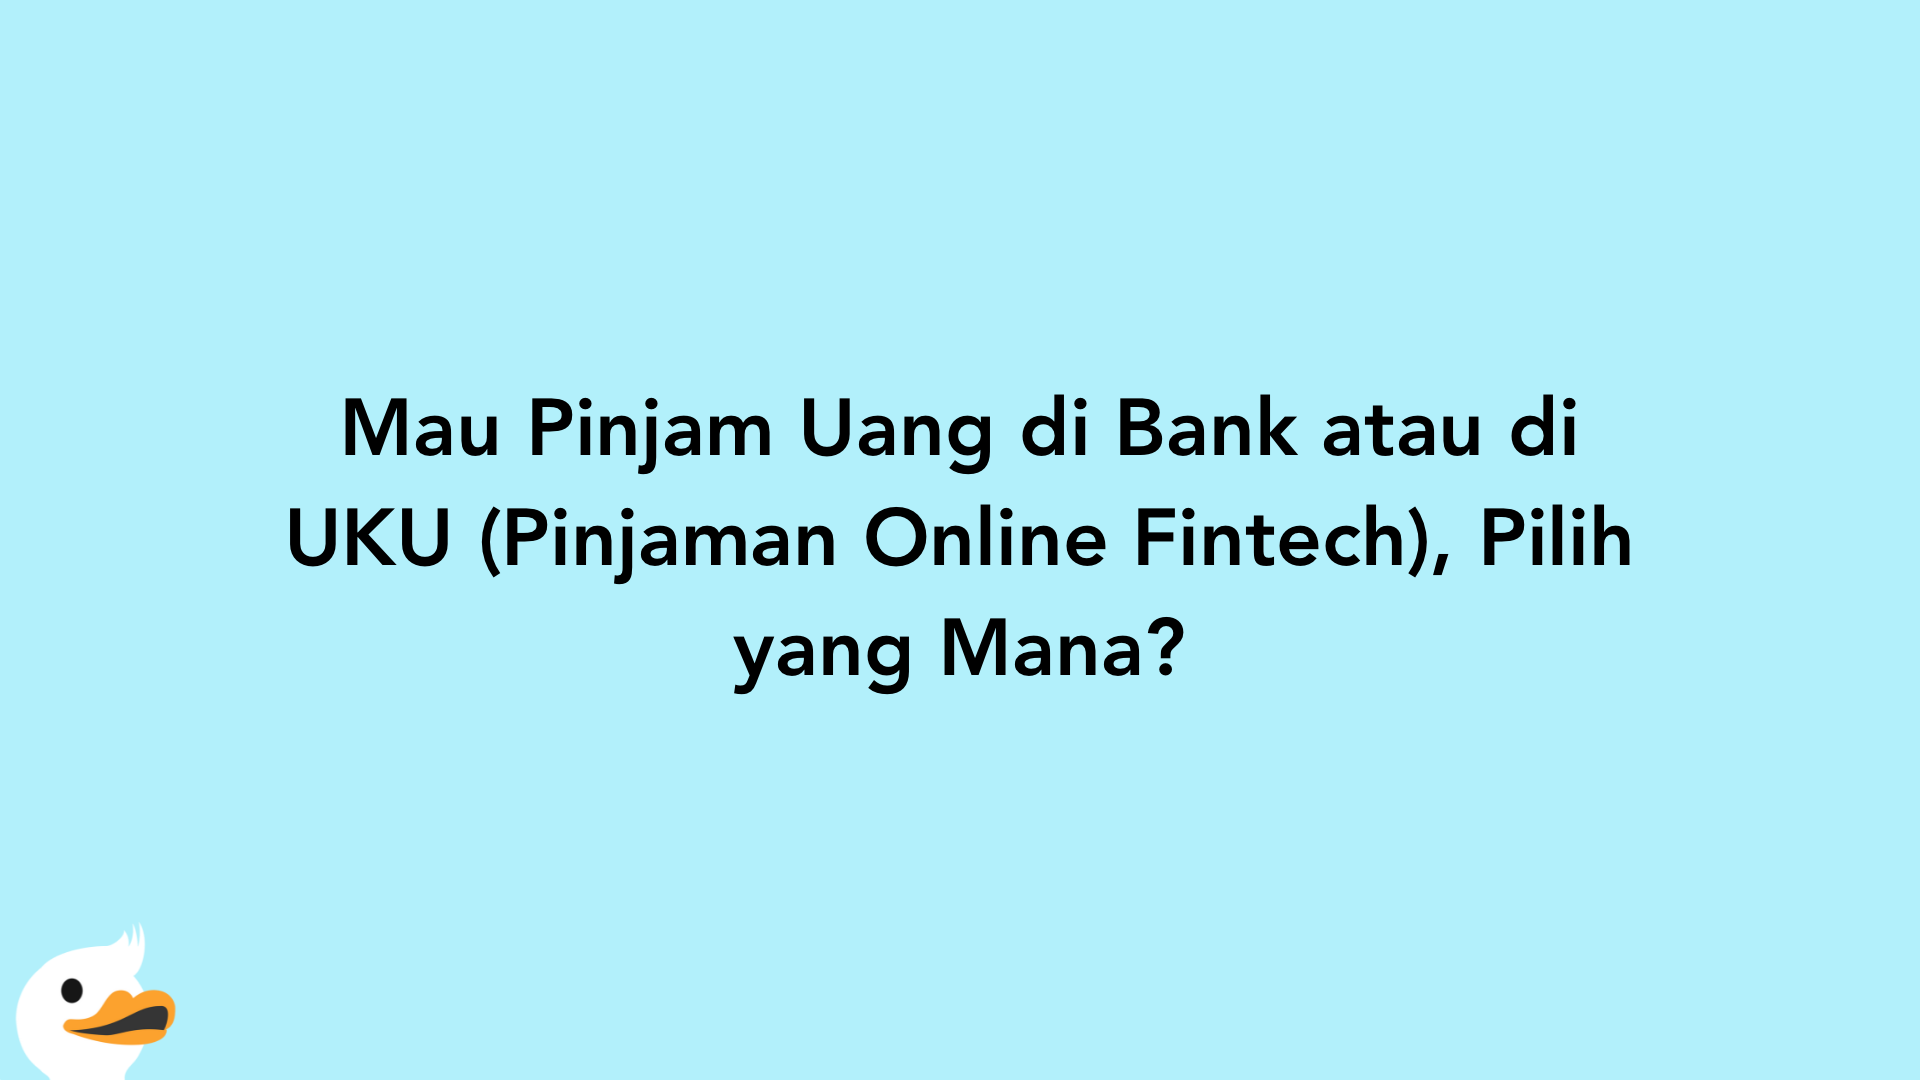 Mau Pinjam Uang di Bank atau di UKU (Pinjaman Online Fintech), Pilih yang Mana?